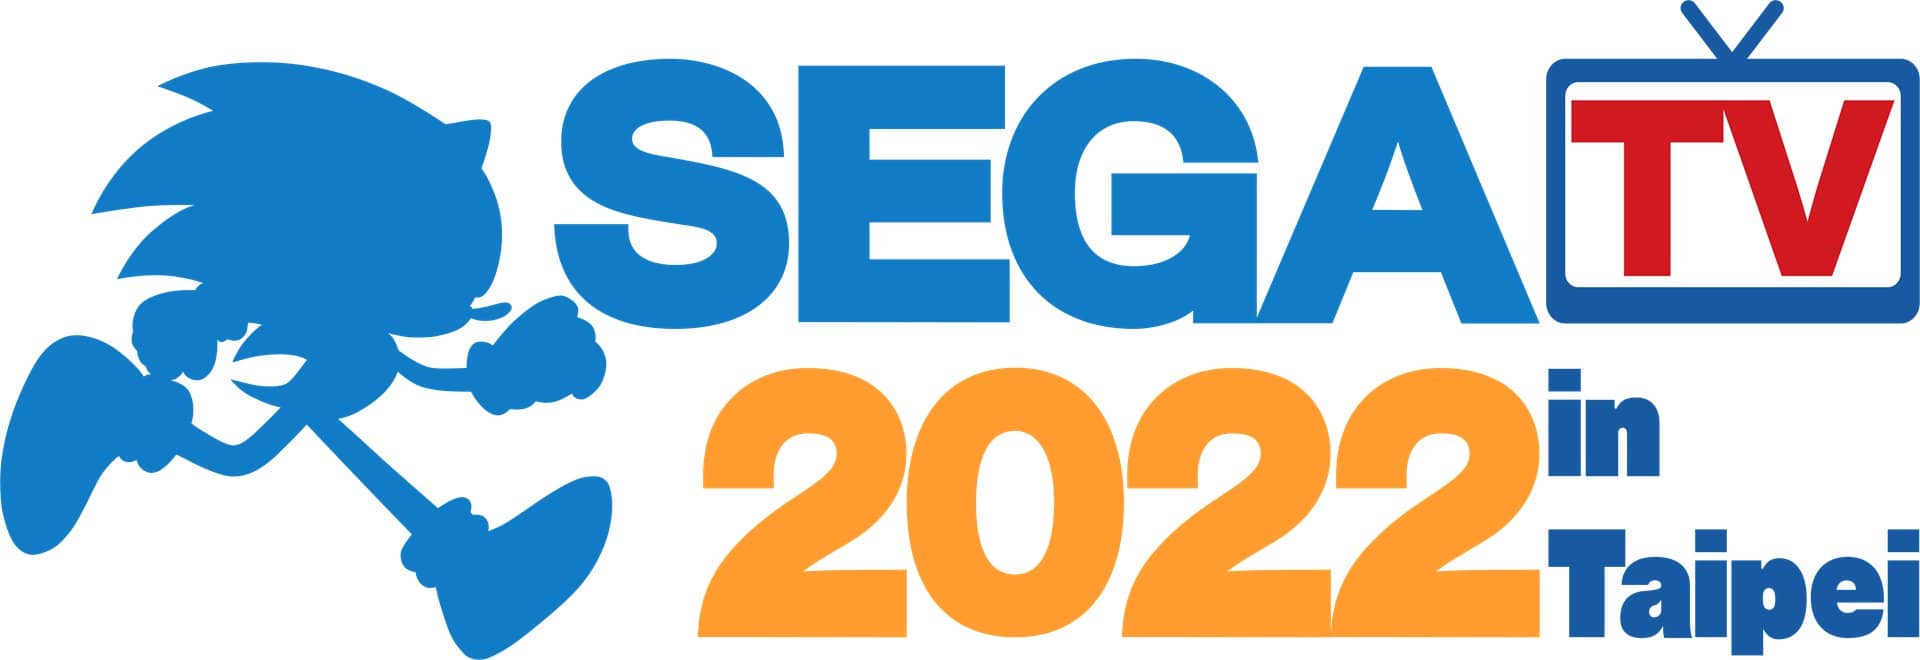 SEGA-TV-2022_LOGO